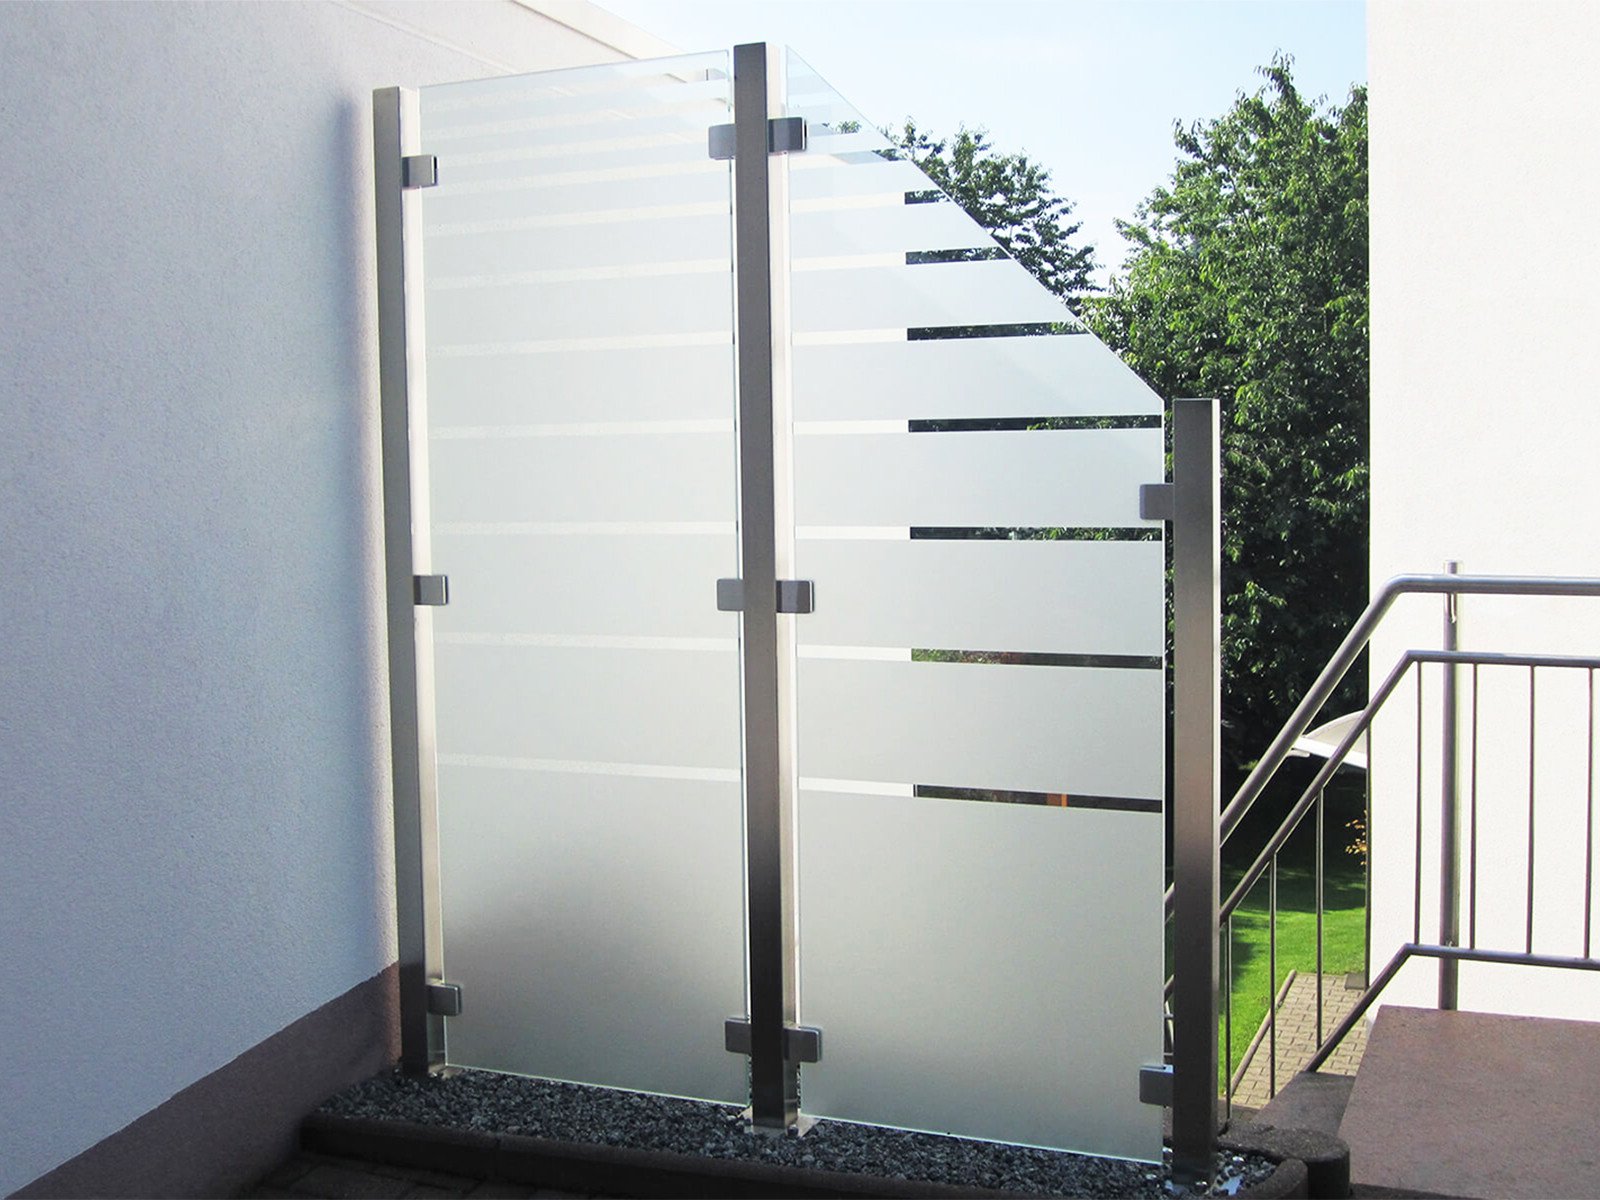 Glaszaun Wind- und Sichtschutz nach Maß optimal für jeden Außenbereich flexibel im Einsatz